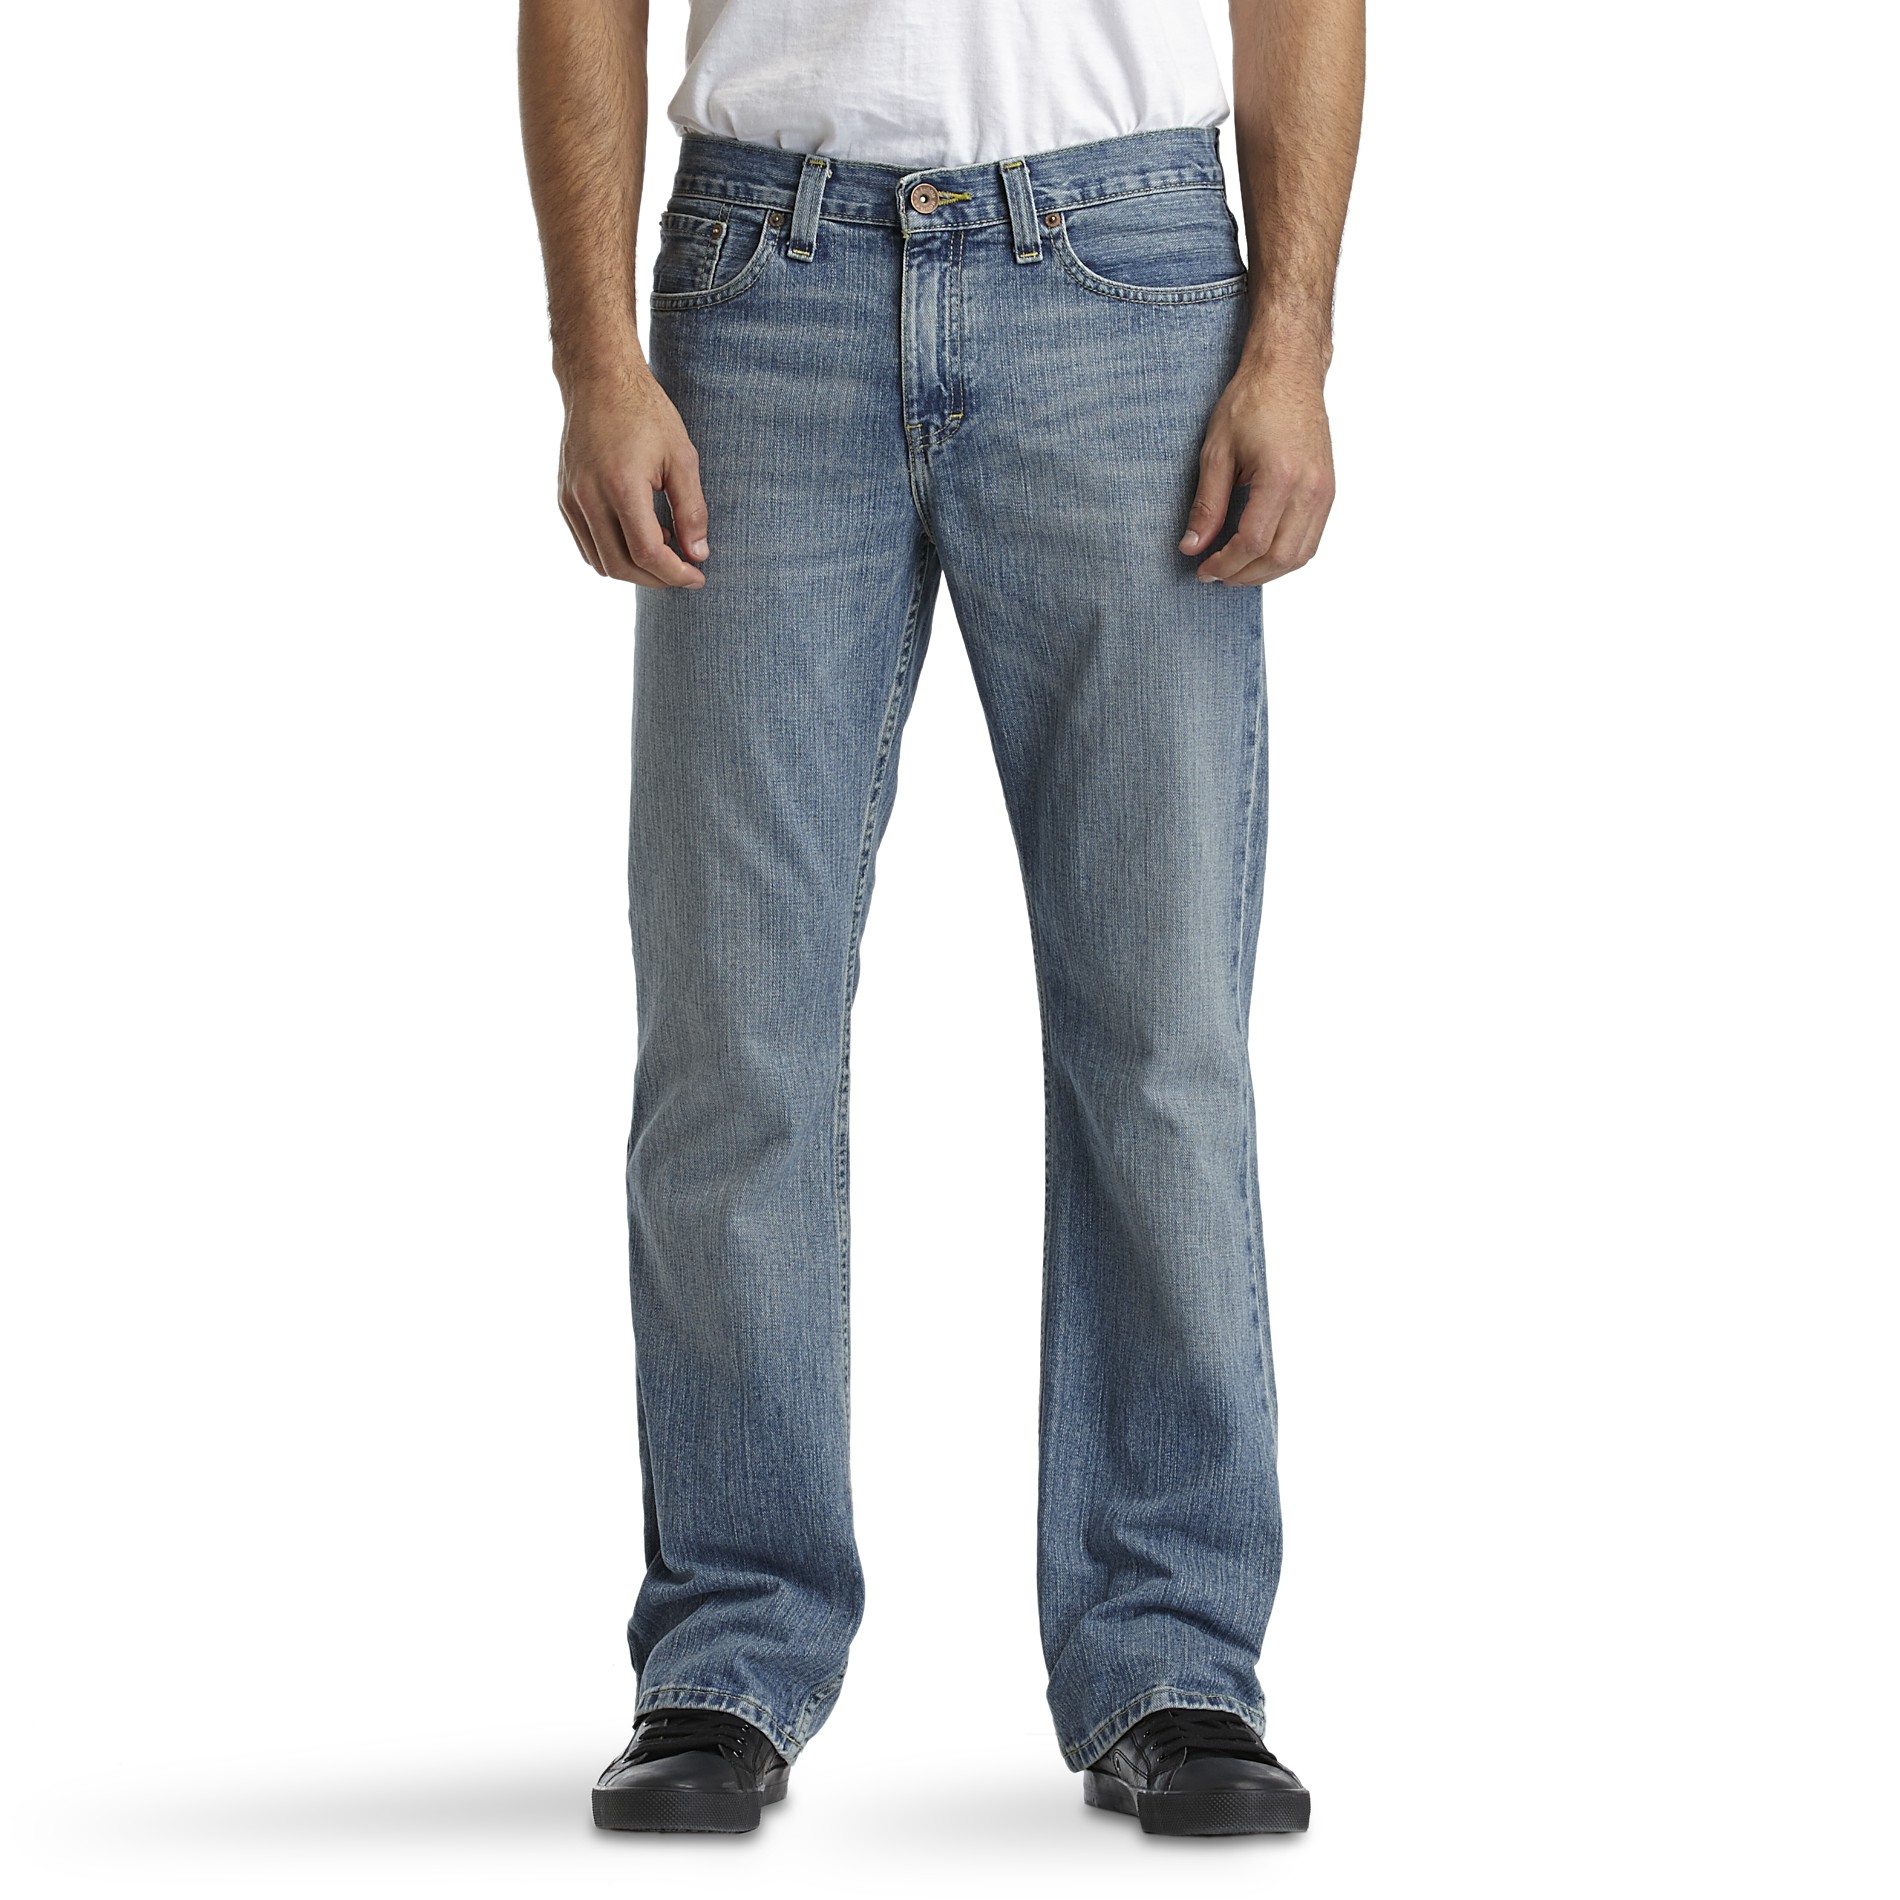 Route 66 Men's Low Boot-Cut Jeans